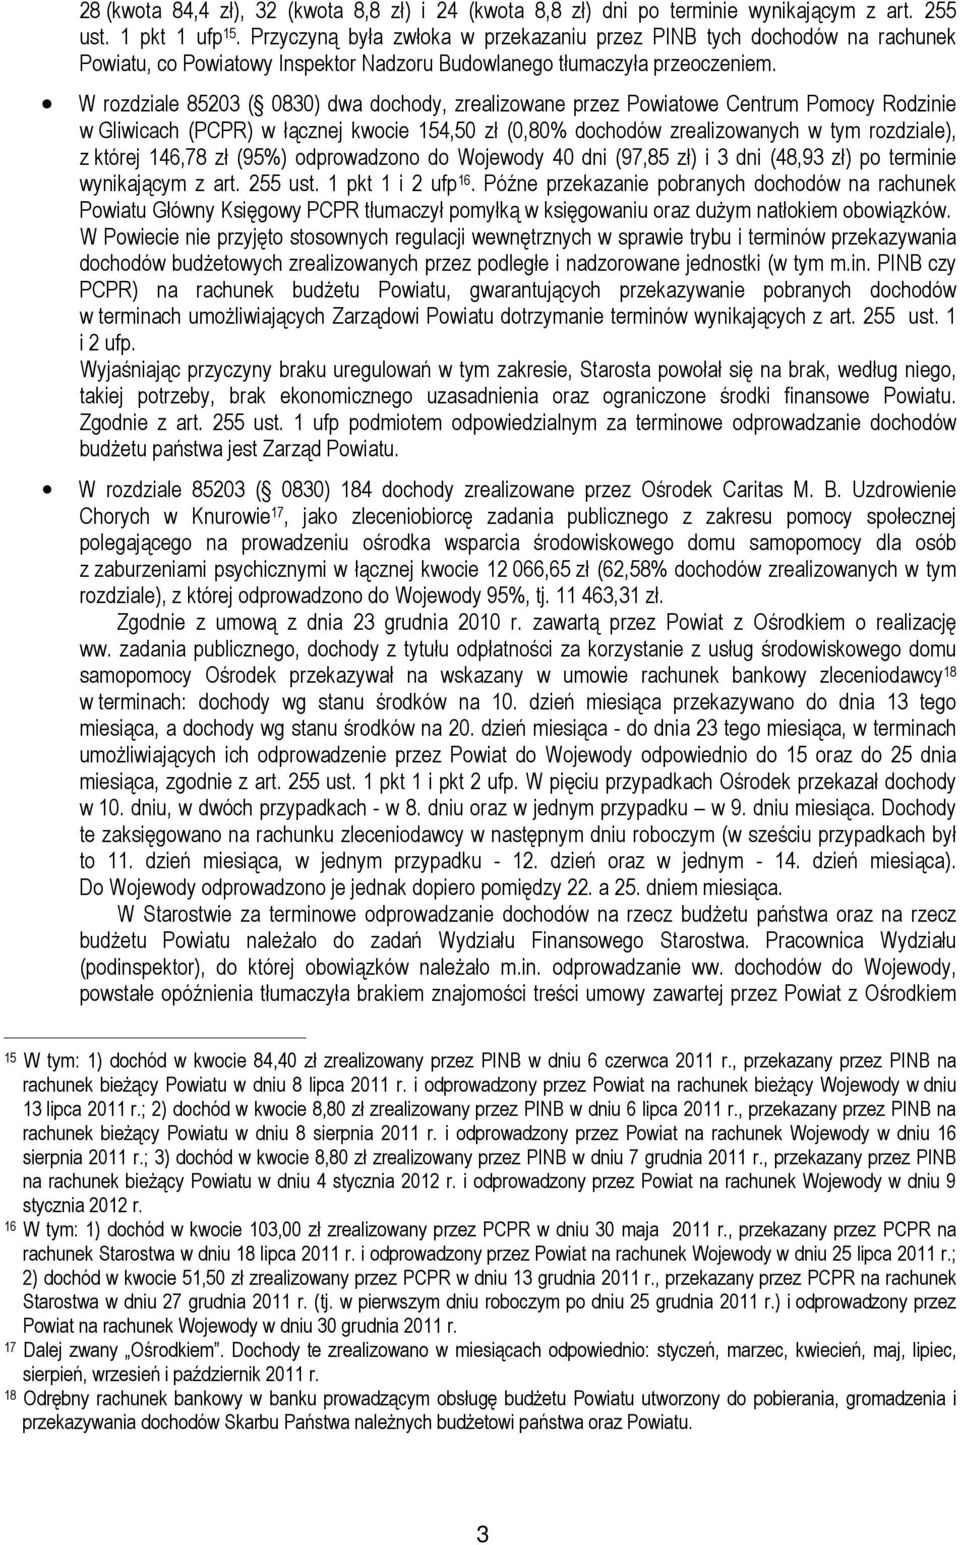 W rozdziale 85203 ( 0830) dwa dochody, zrealizowane przez Powiatowe Centrum Pomocy Rodzinie w Gliwicach (PCPR) w łącznej kwocie 154,50 zł (0,80% dochodów zrealizowanych w tym rozdziale), z której